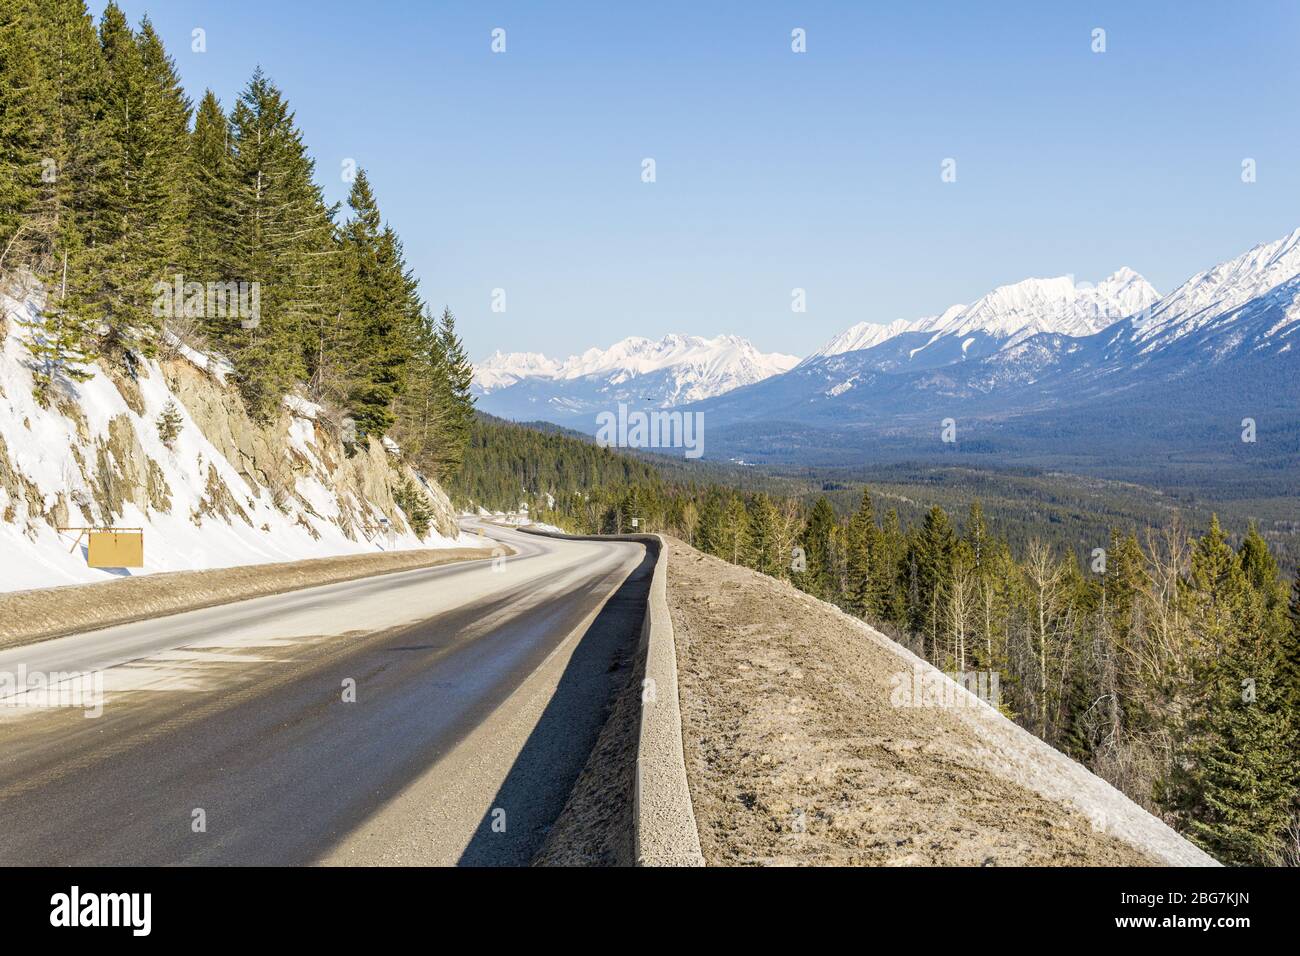 Autobahn zu felsigen Bergen und blauem Himmel East Kootenay british columbia kanada. Stockfoto